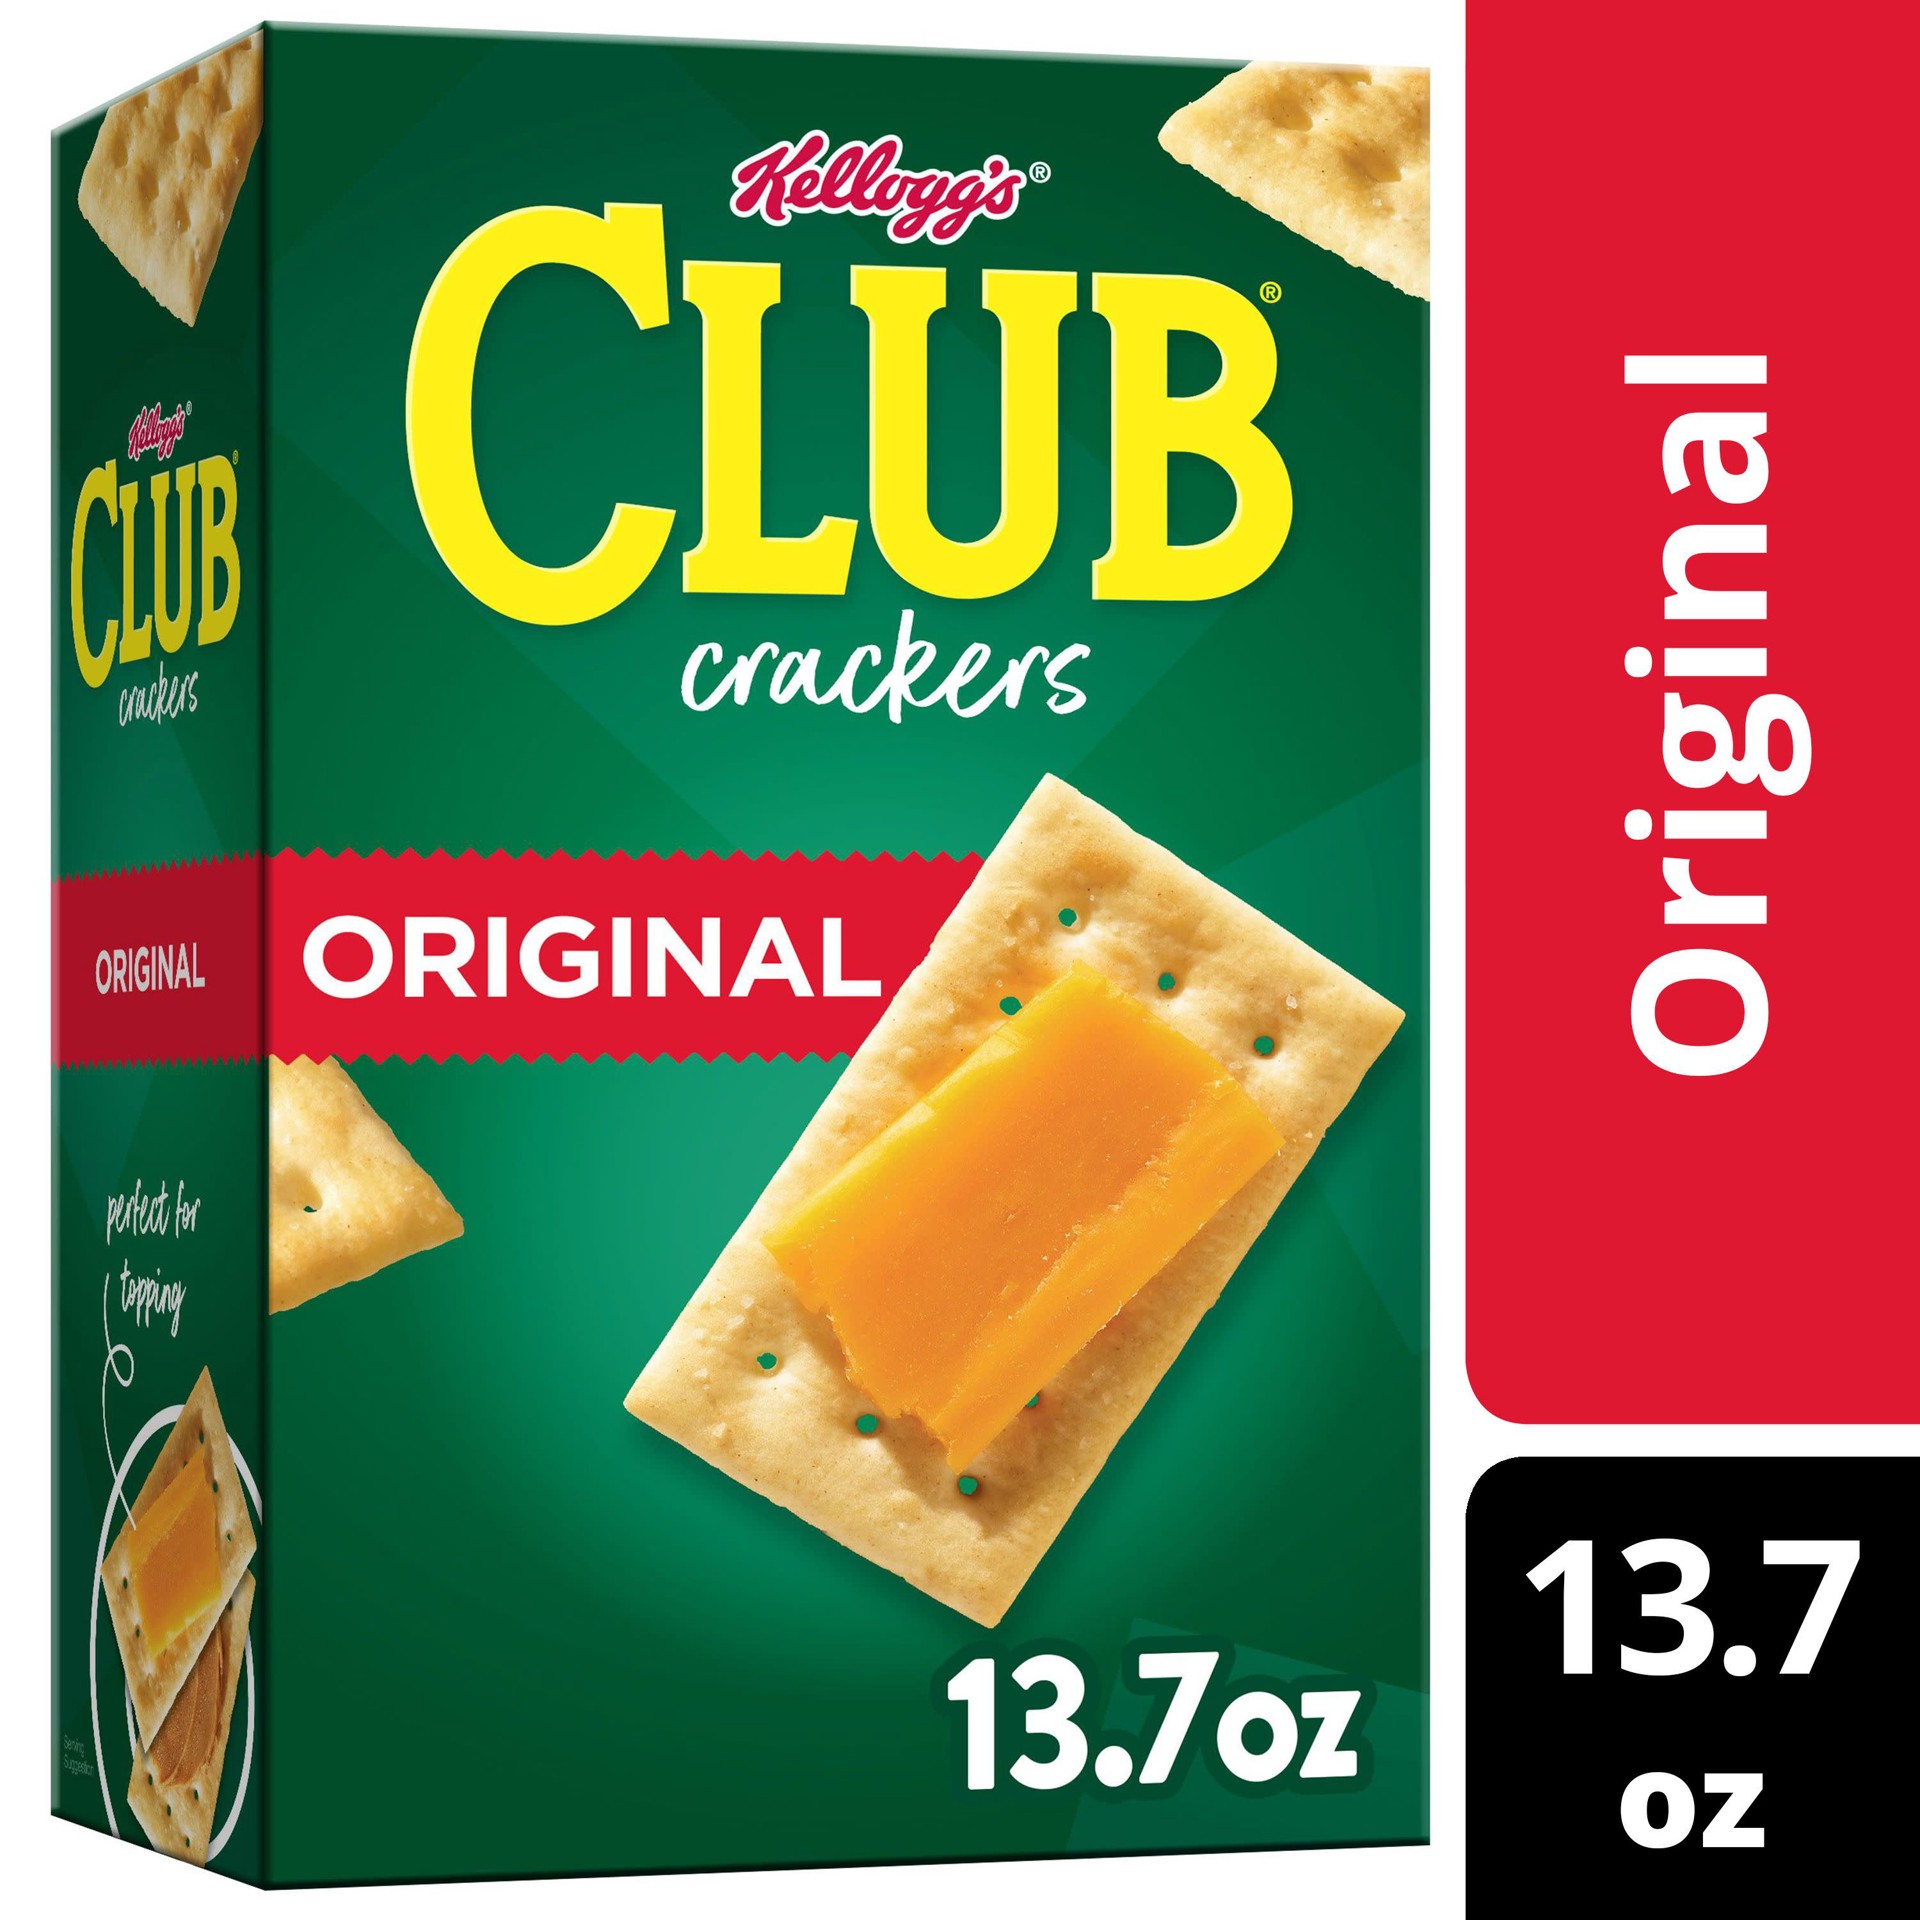 slide 1 of 5, Club Kellogg's Club Crackers, Original, 13.7 oz, 13.7 oz